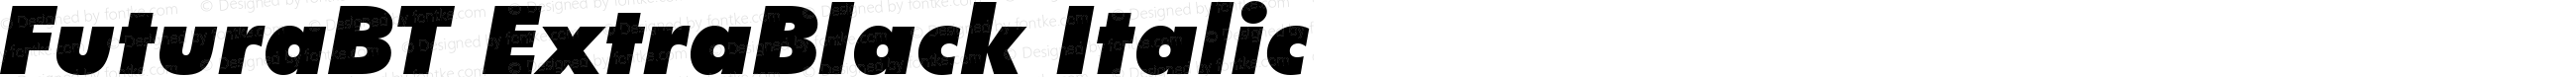 FuturaBT ExtraBlack Italic